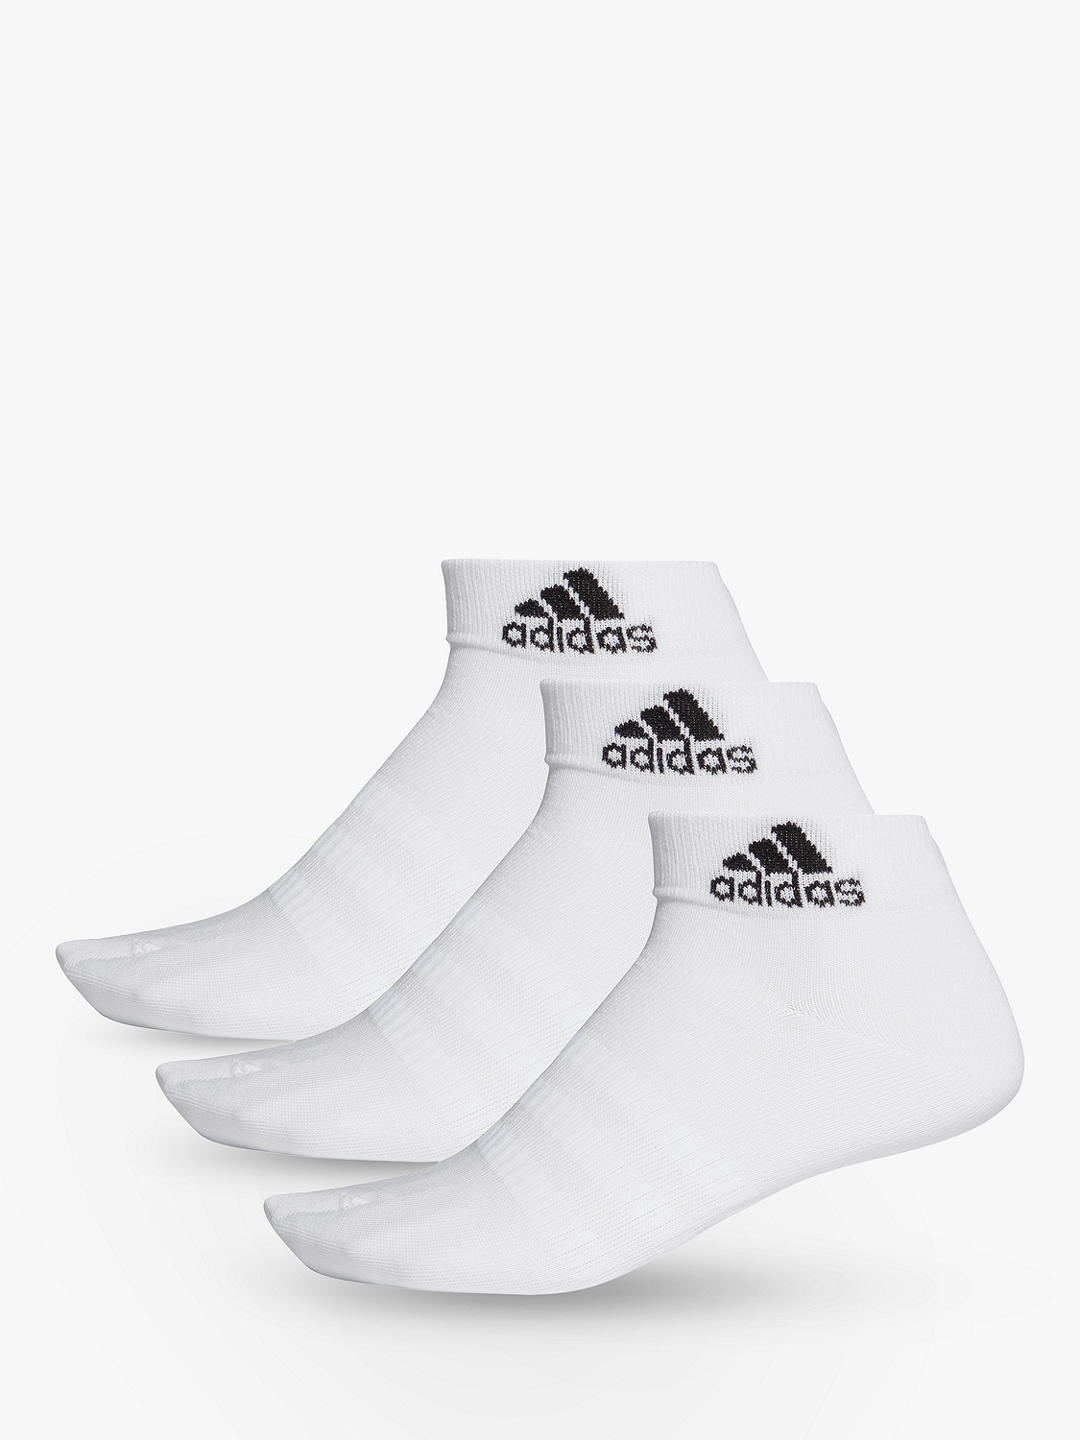 adidas Light Training Ankle Socks, Pack of 3, White